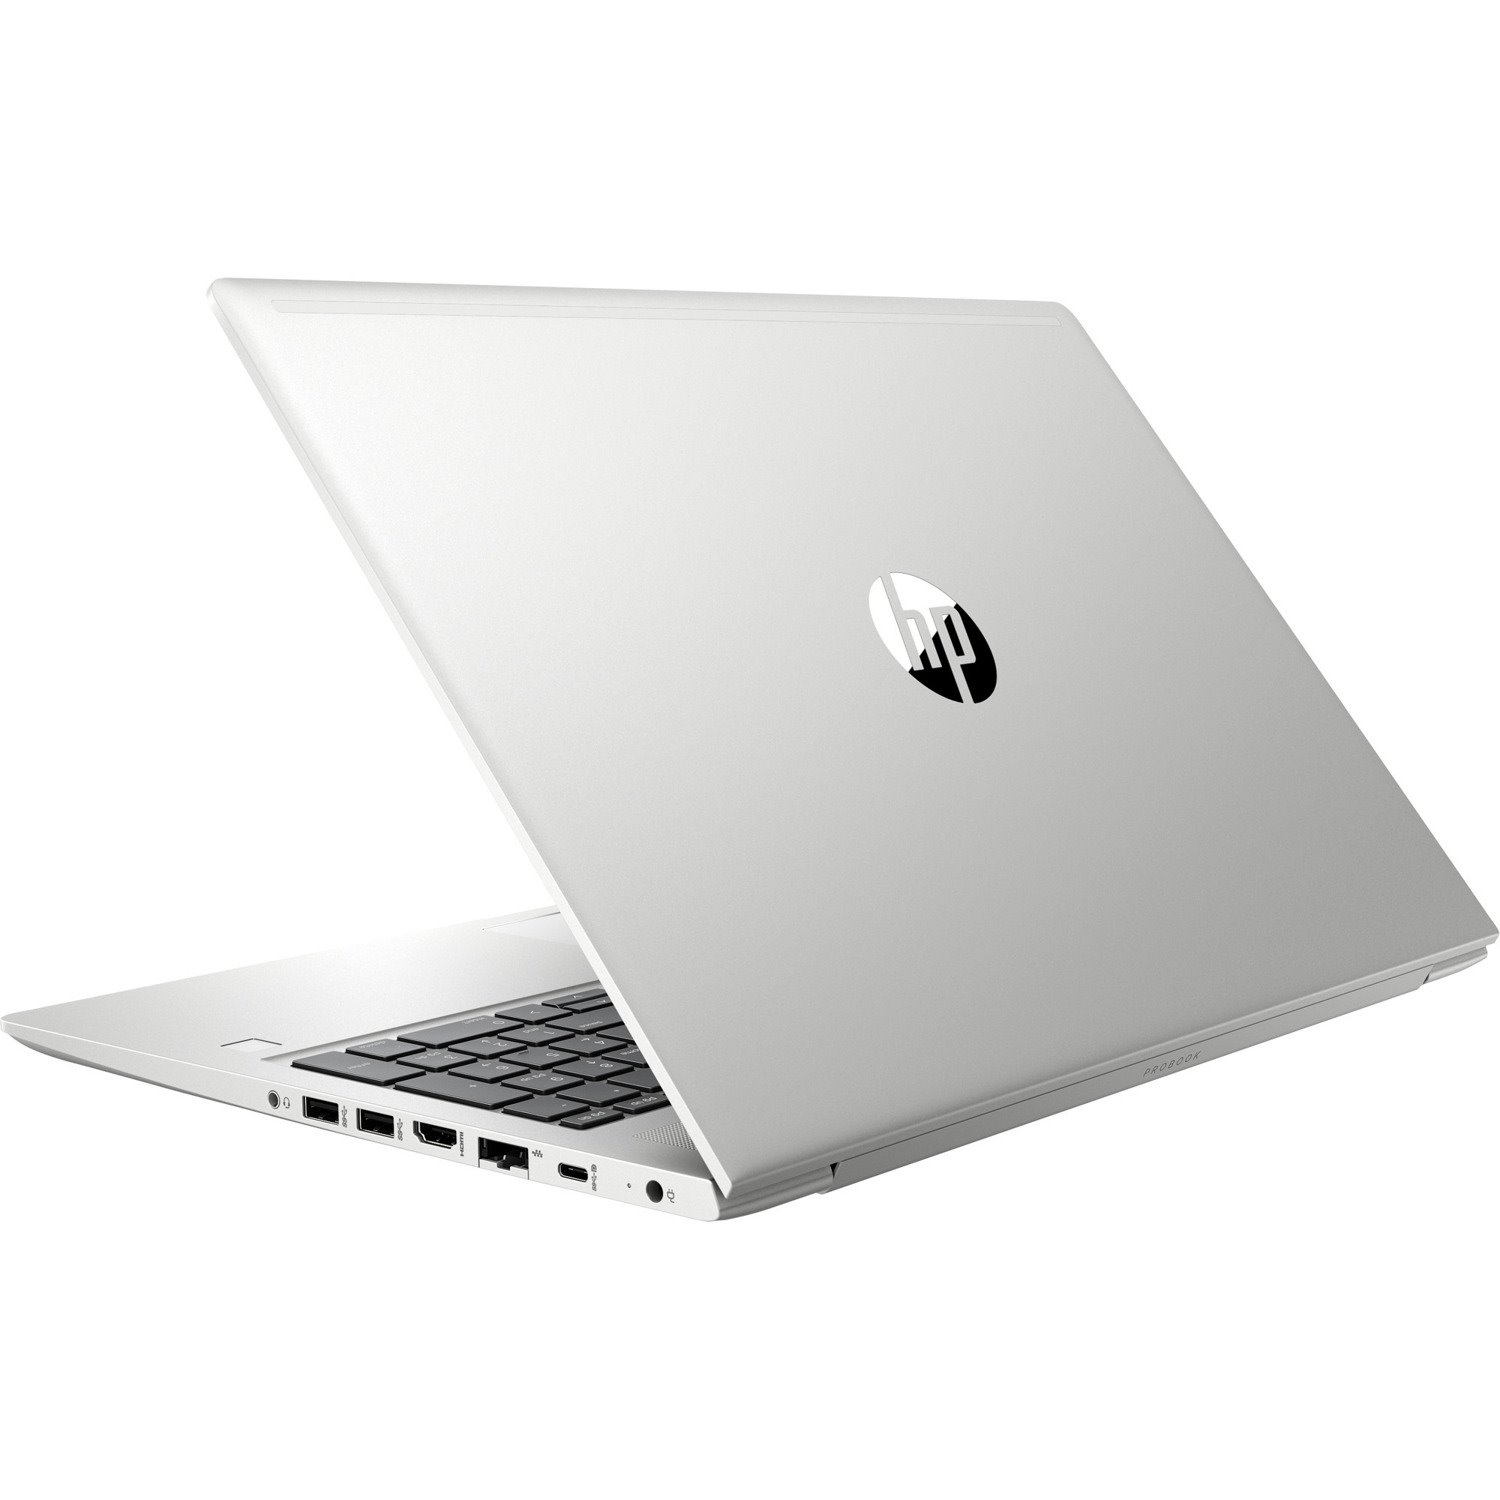 HP ProBook 450 G7 LTE 15.6" Notebook - 1920 x 1080 - Intel Core i5 10th Gen i5-10210U Quad-core (4 Core) 1.60 GHz - 8 GB Total RAM - 256 GB SSD